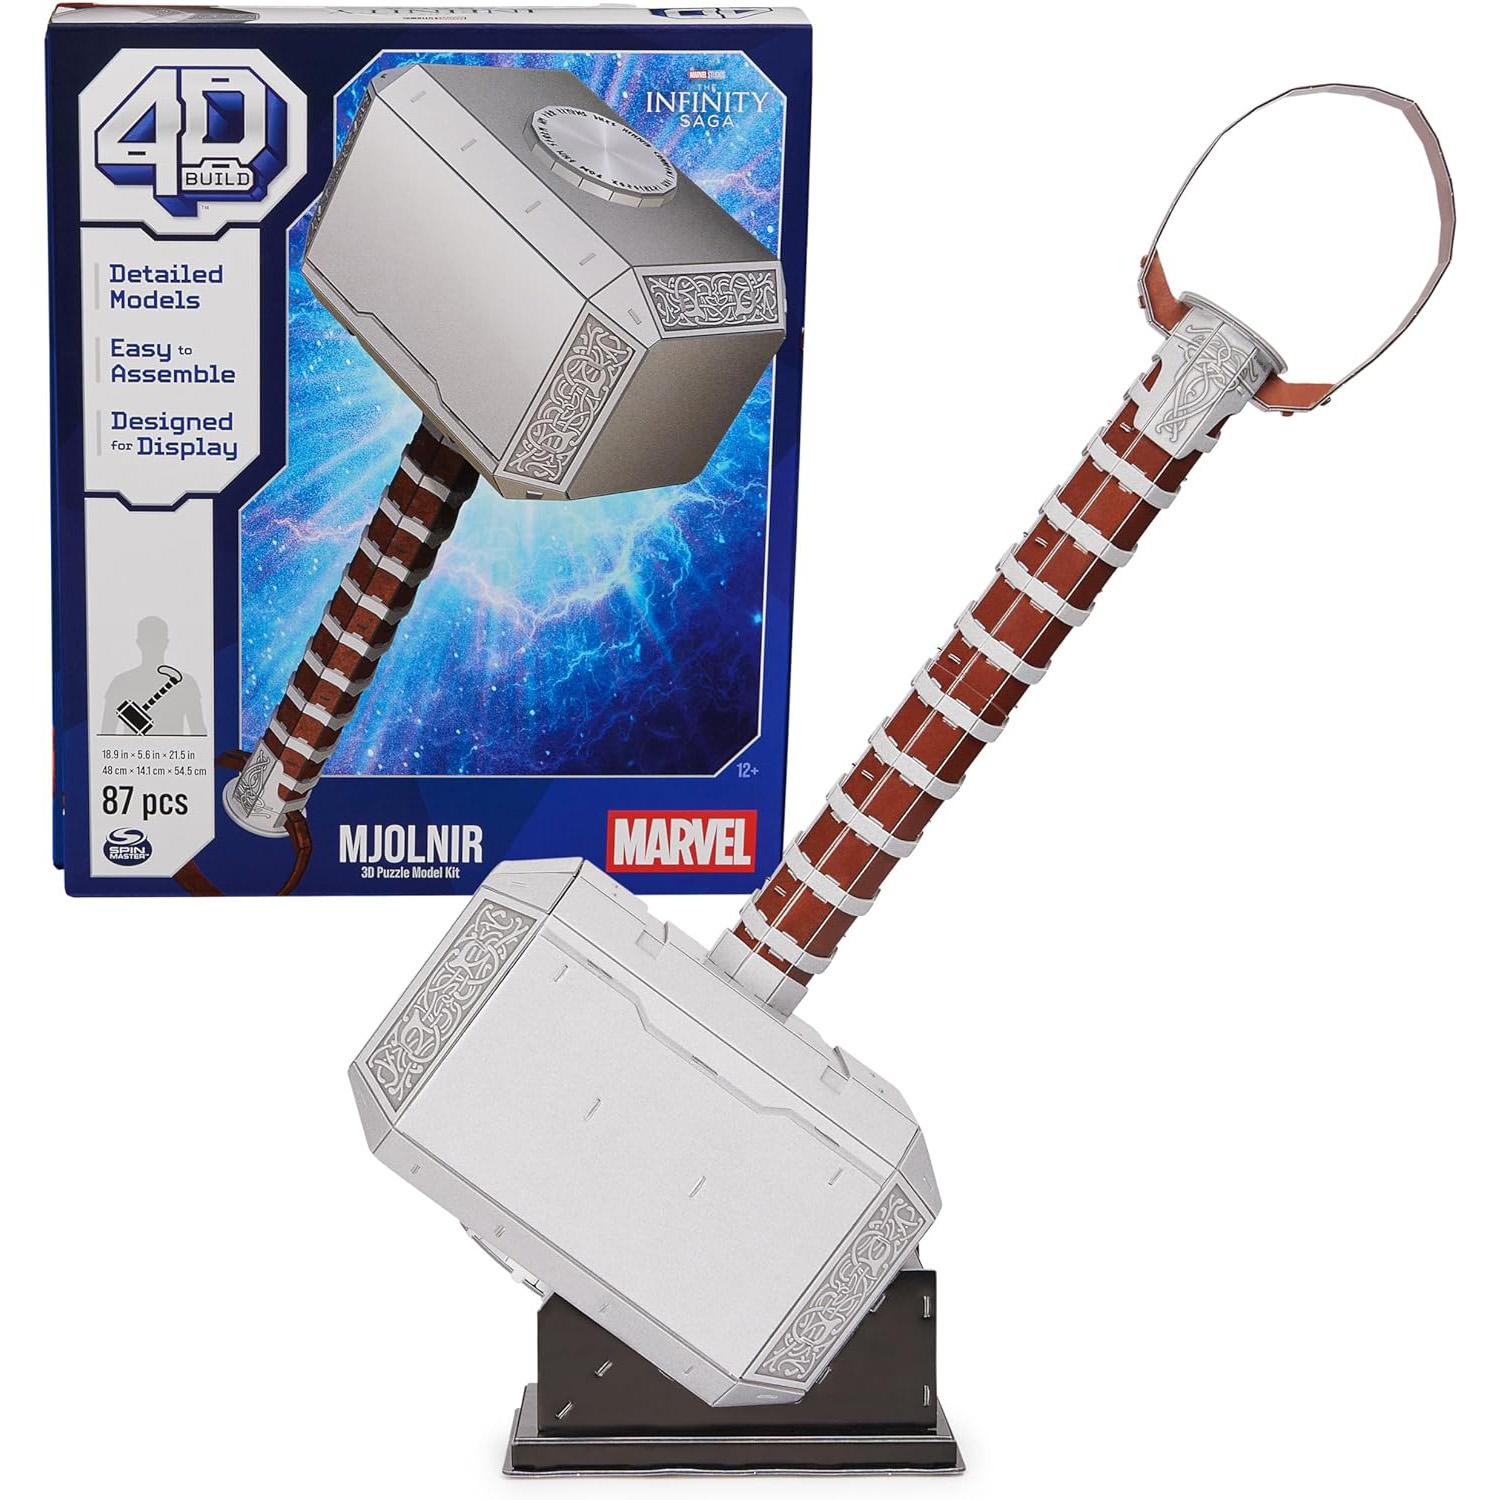 4D Build Marvel Mjolnir Thor Hammer 3D Puzzle Model Kit for $6.99